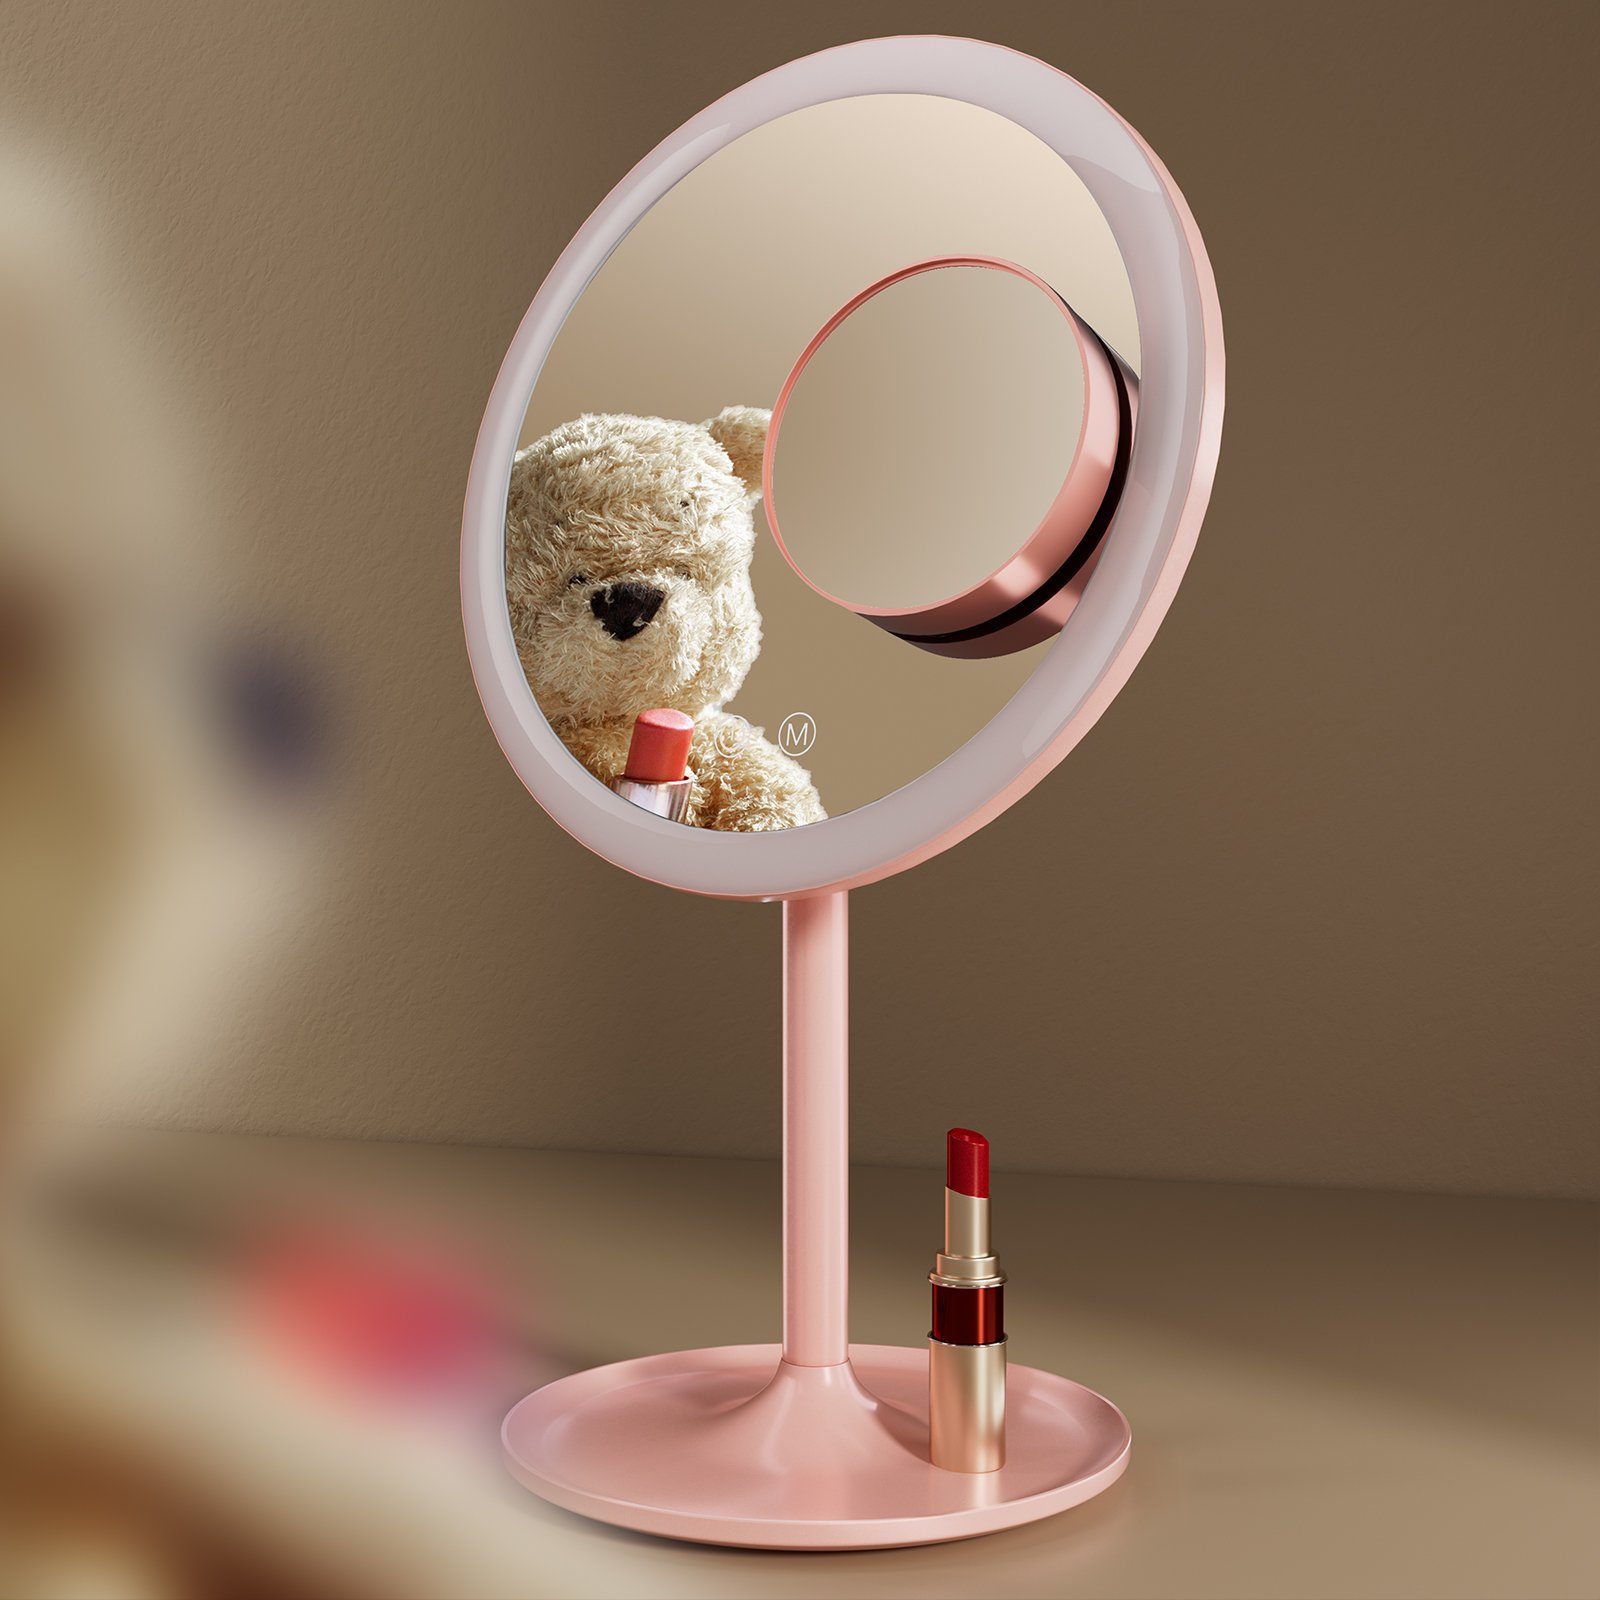 EMKE Kosmetikspiegel Macaron Tischspiegel mit Beleuchtung 3 Lichtfarben Dimmbar, 1X / 3X,90°Drehbar,USB Aufladbarer LED Schminkspiegel für Schminken Rosa